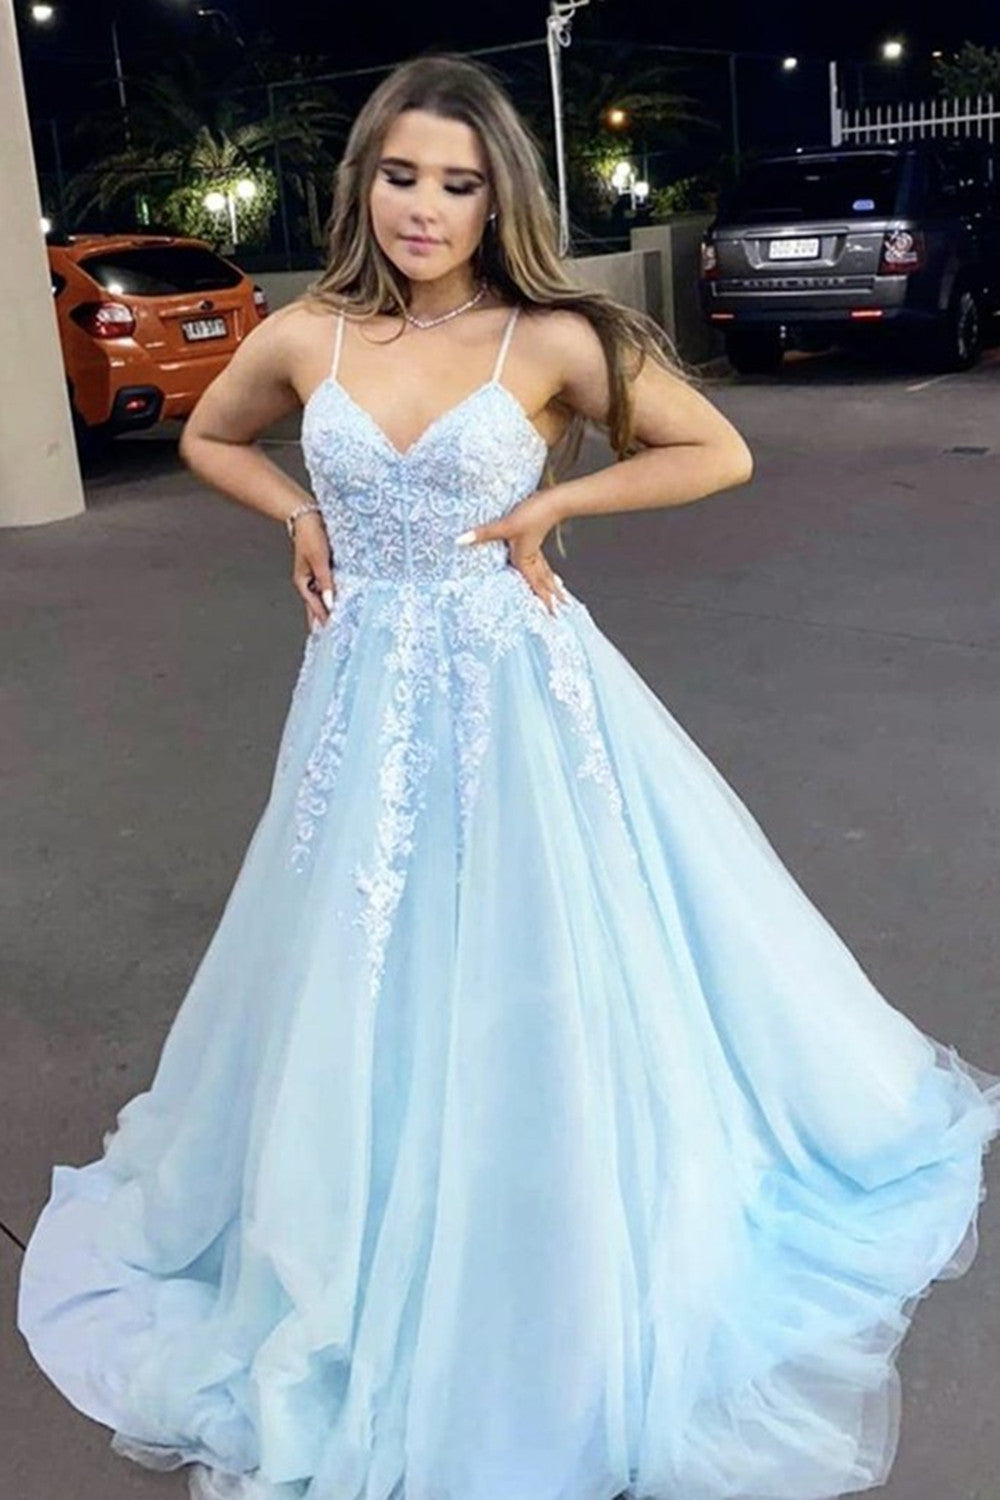 Spaghetti Straps Sky Blue Long Prom Dresses, Lace 2021 Prom Dresses, Evening Dresses